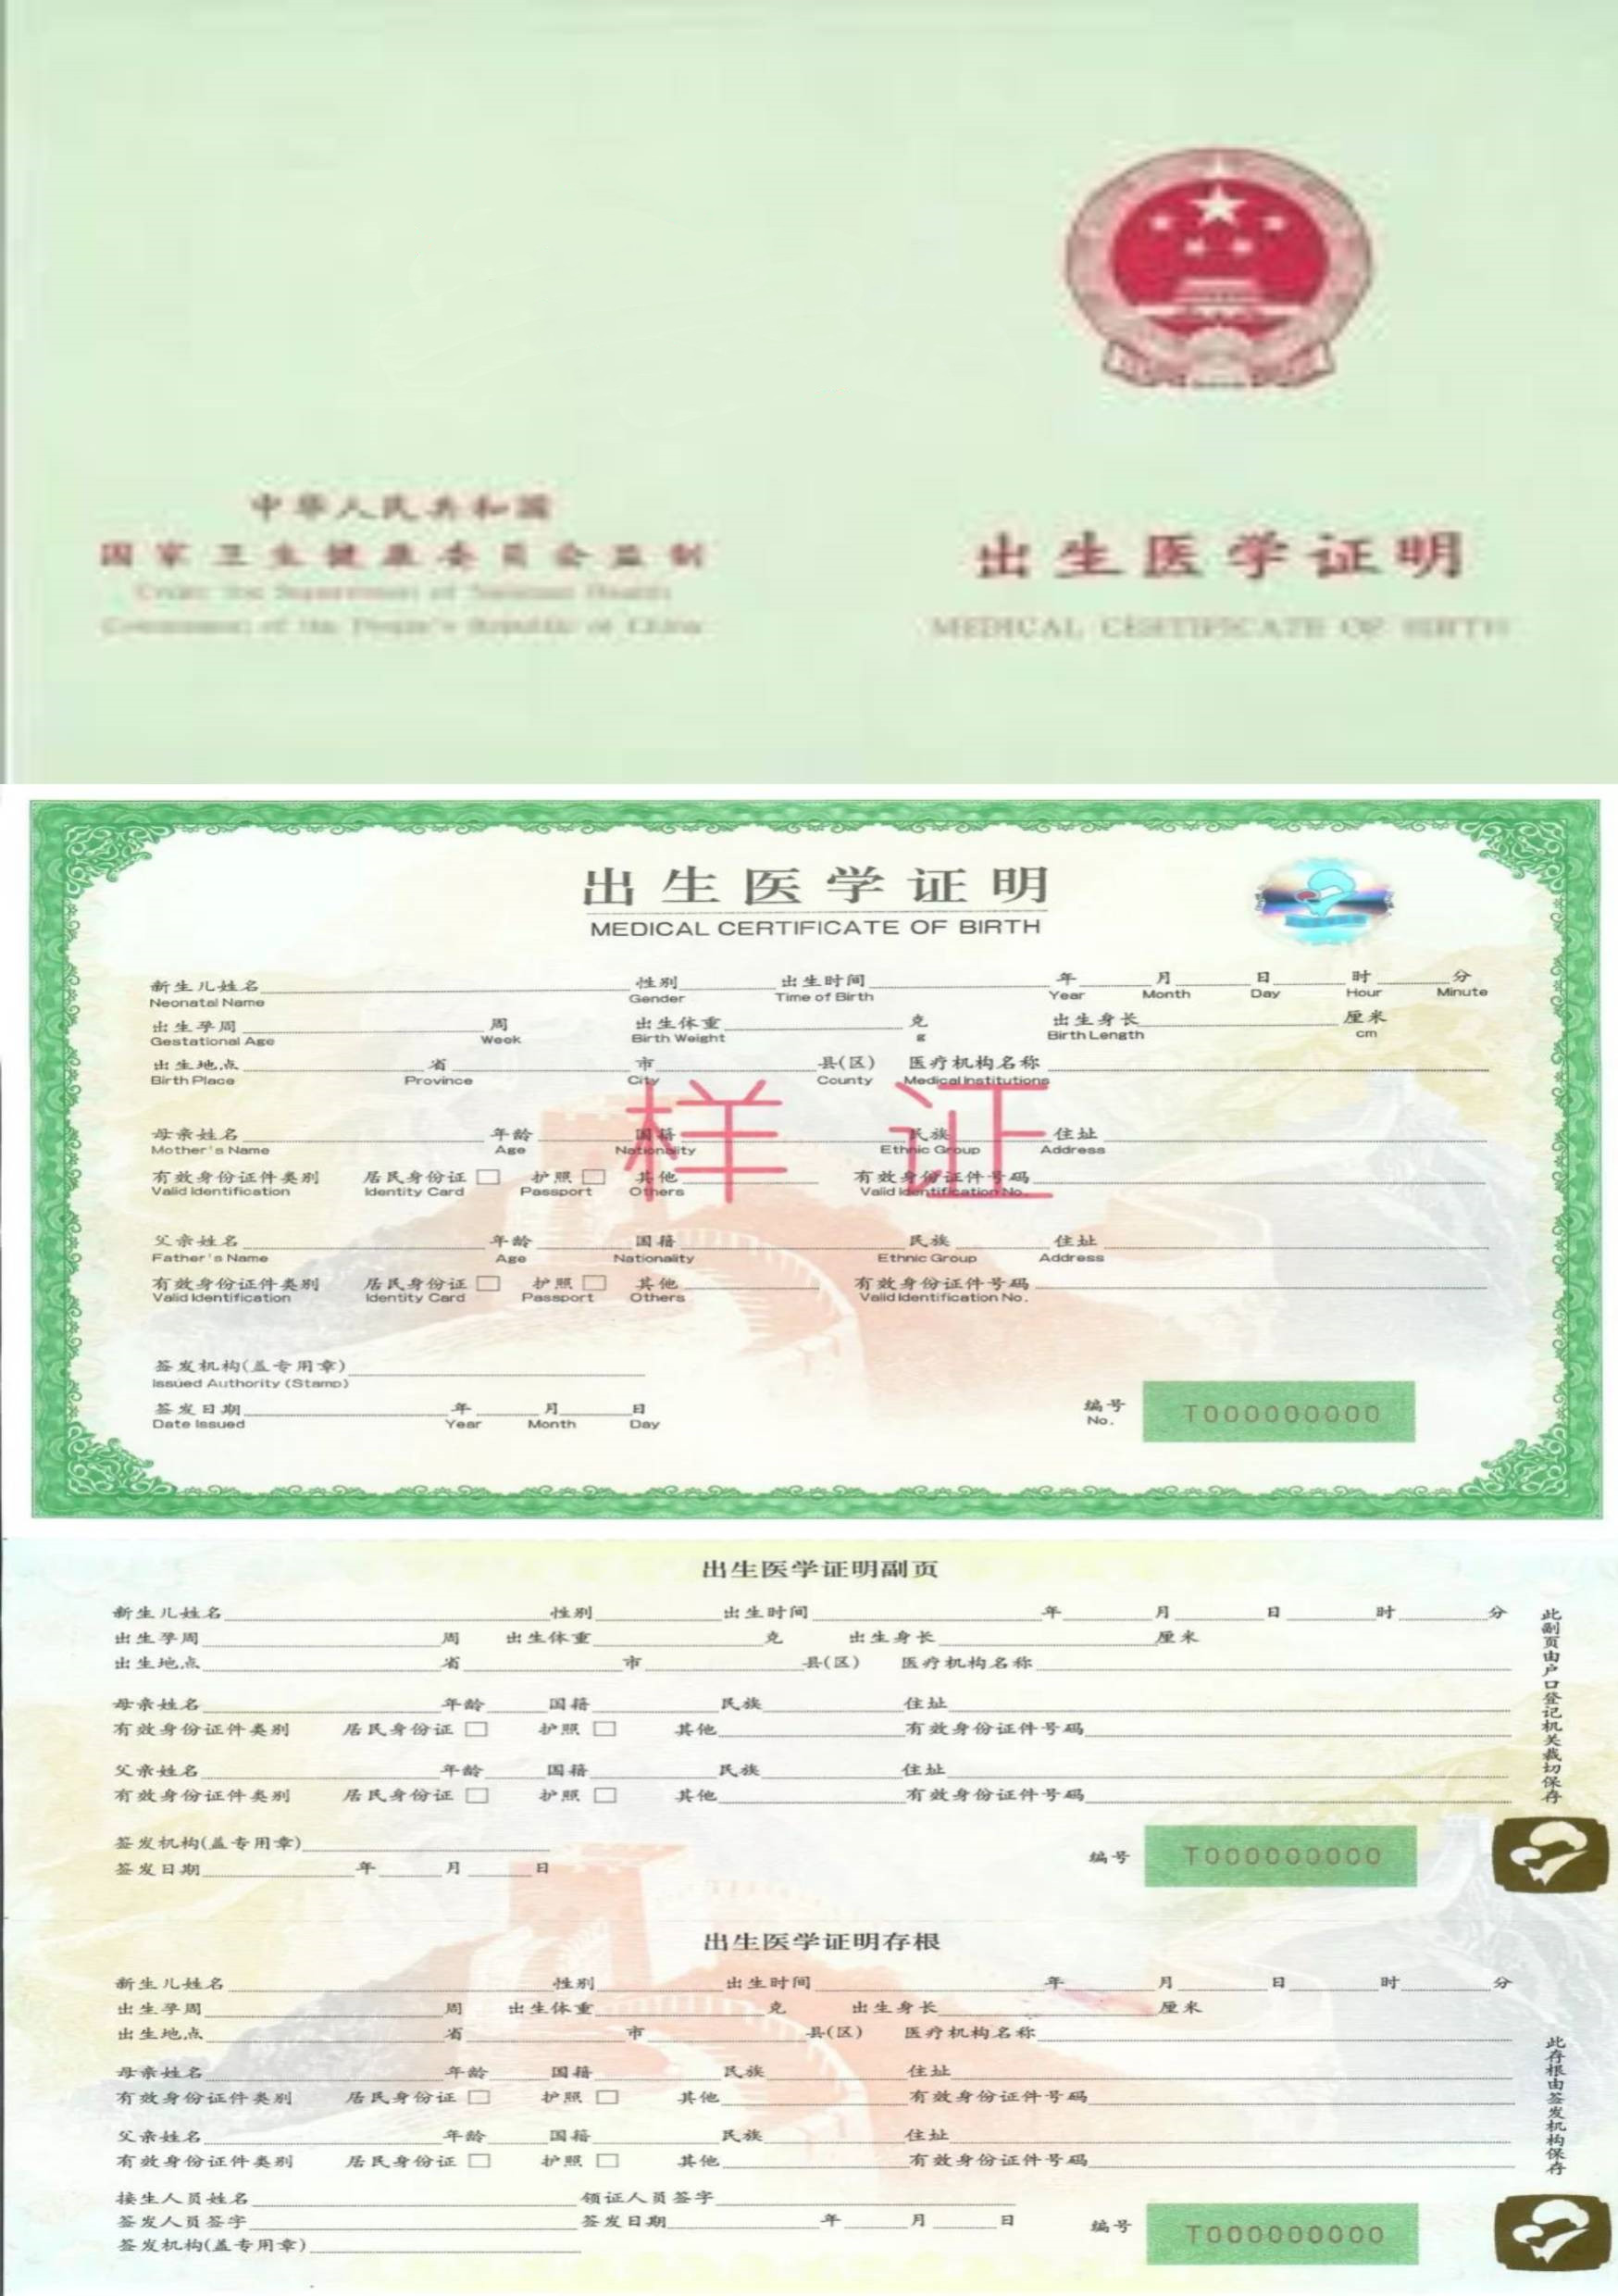 加拿大PNP要出生公证书吗，医学出生证明，快速代办，中国公证处海外服务中心